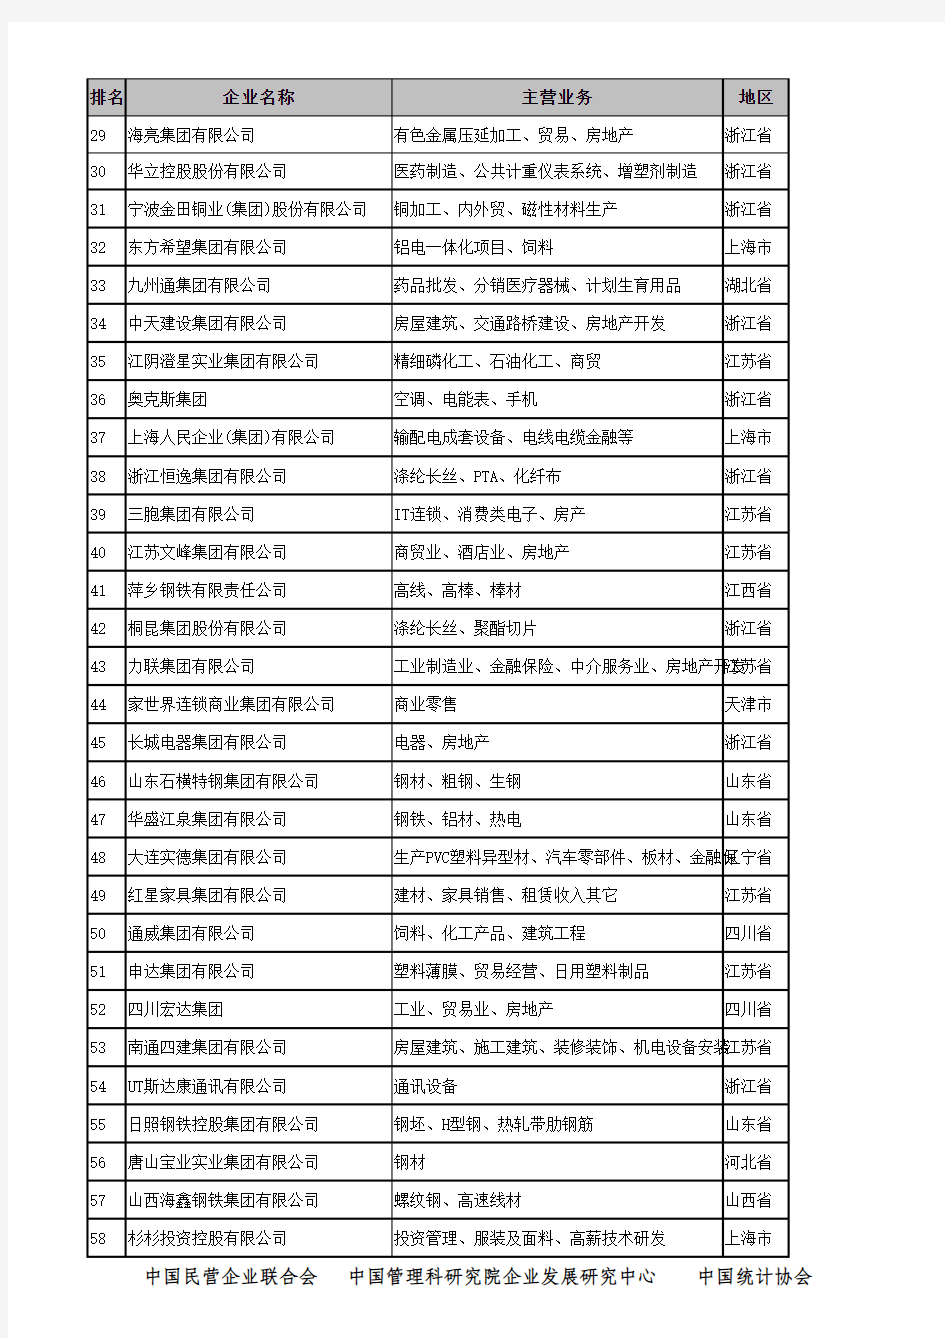 2006年中国民营企业500强排序名单